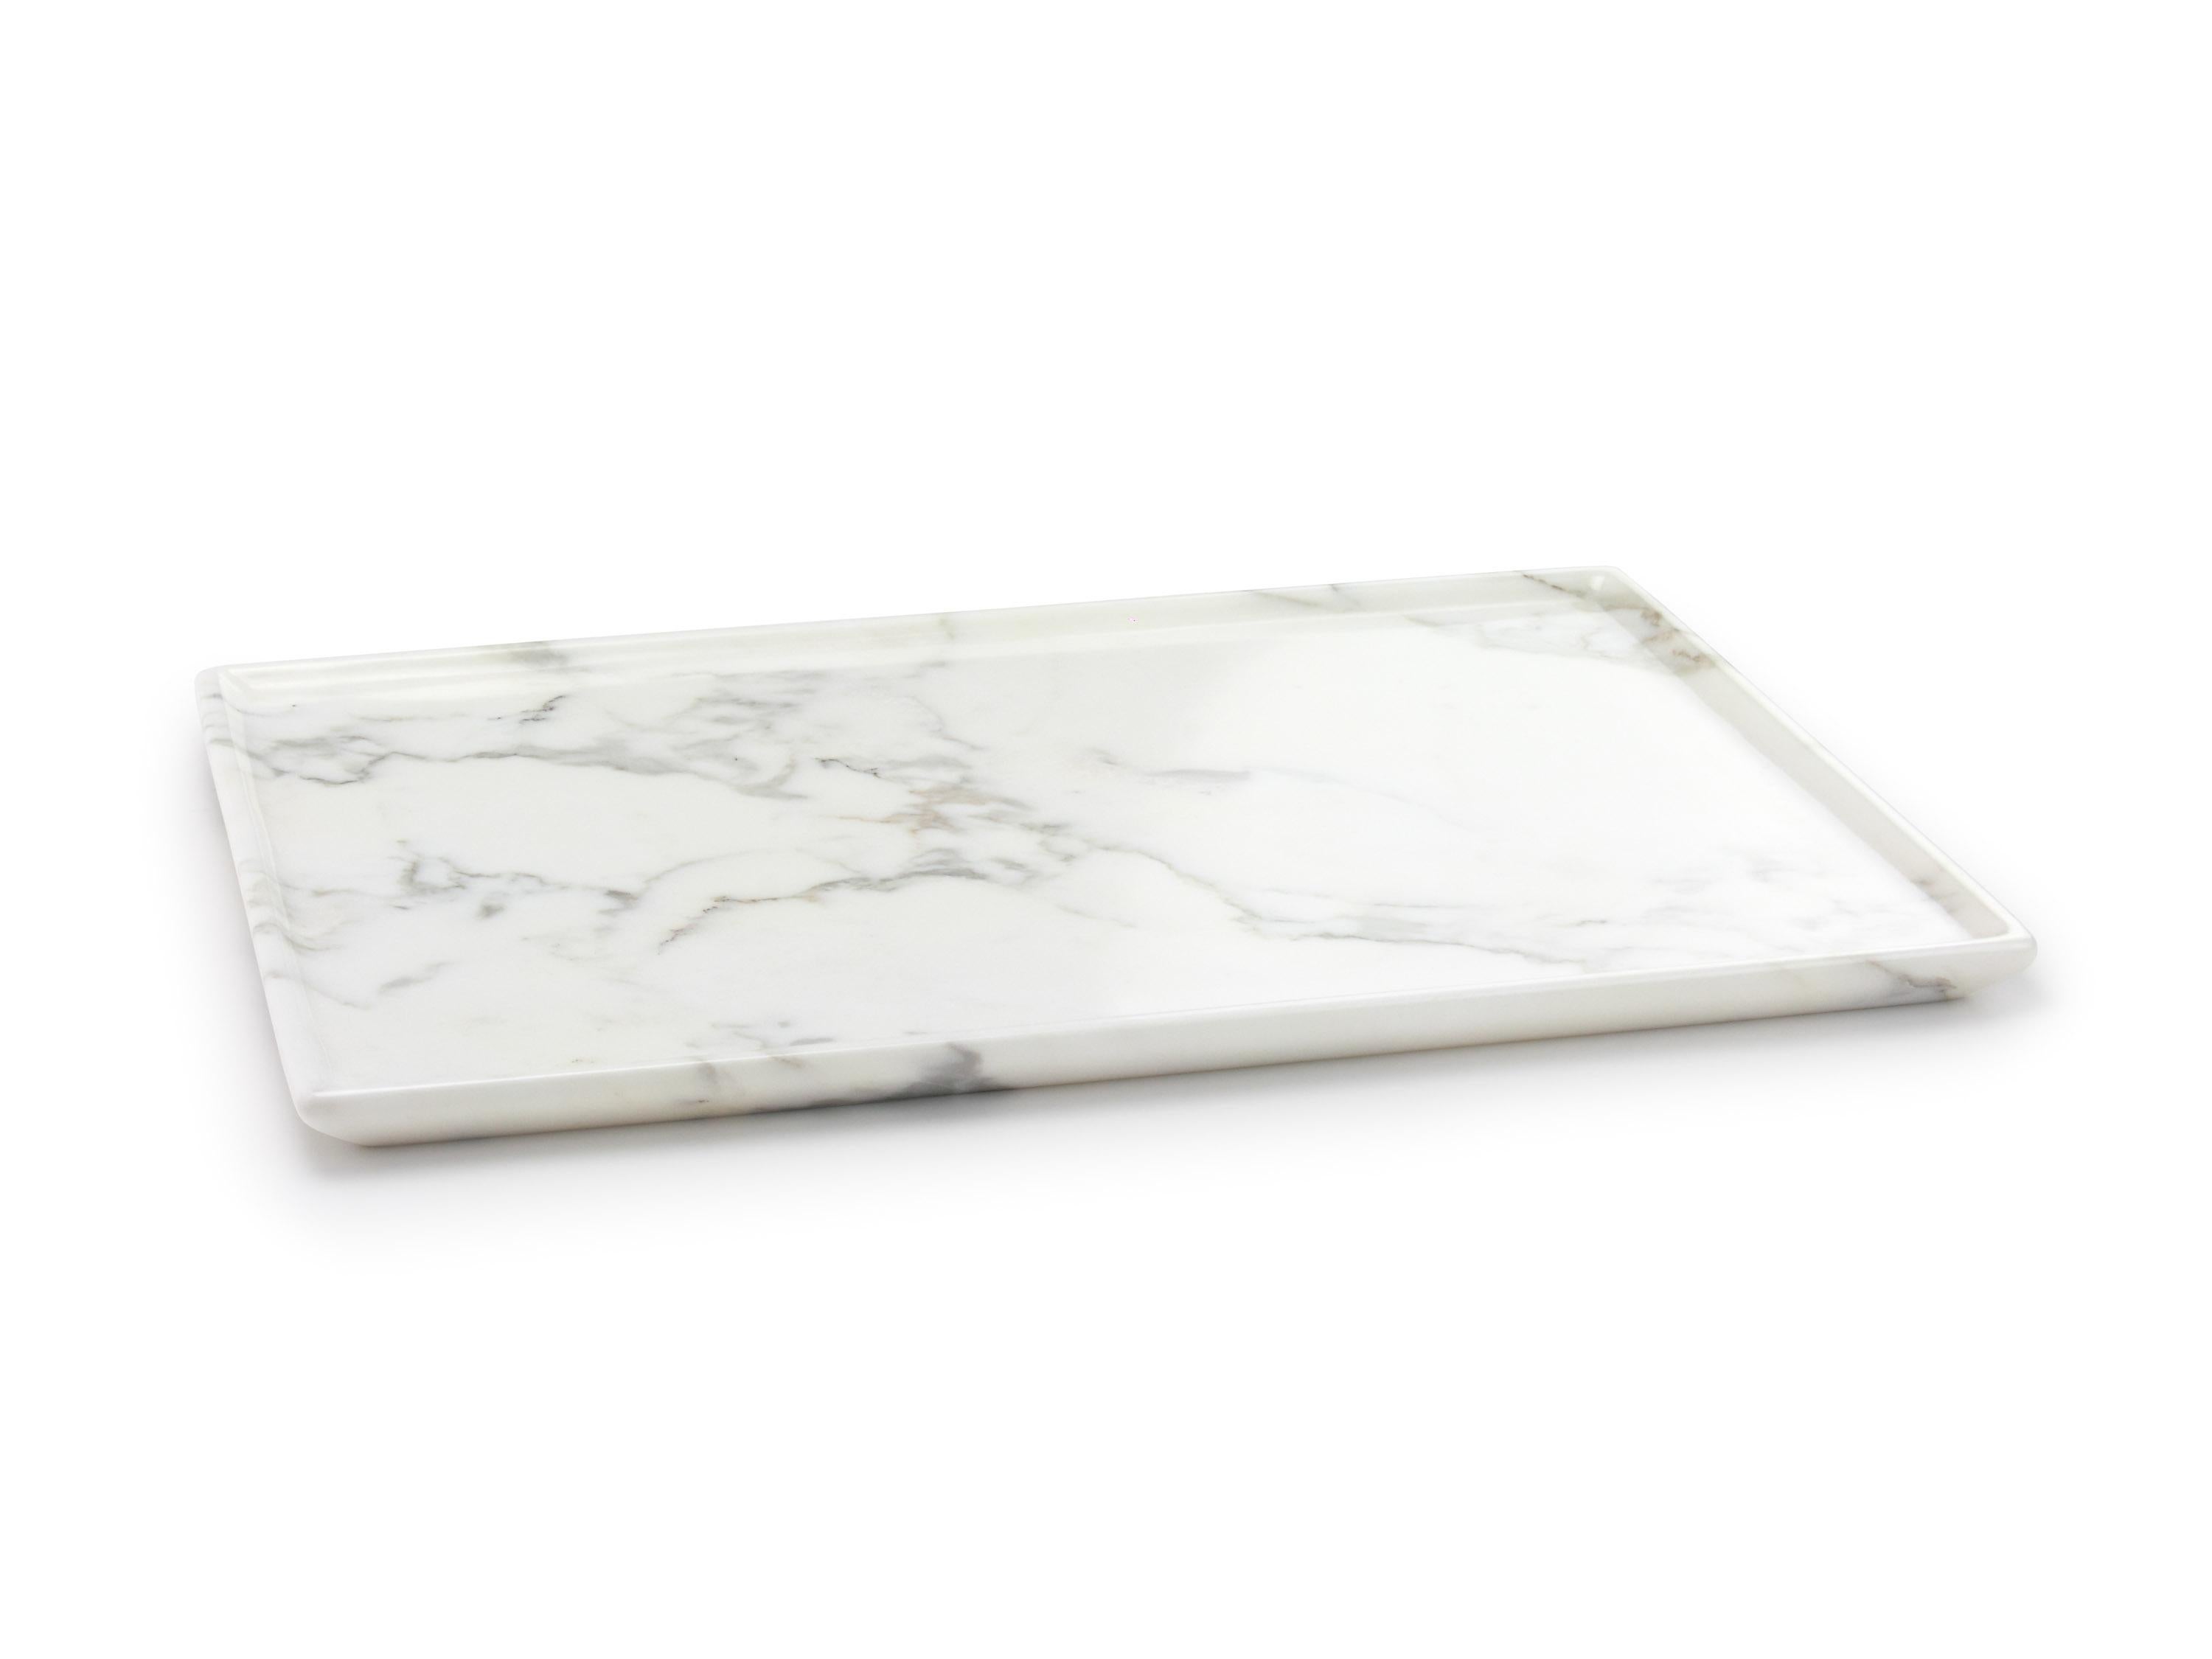 Tabletts oder Servierplatten, die von Hand aus einem massiven Block aus weißem Calacatta-Marmor geschnitzt werden. Abmessungen des Tabletts: L 40, B 29,5, H 2 cm, erhältlich in verschiedenen Marmorsorten und Onyx.

Marmor ist ein natürliches